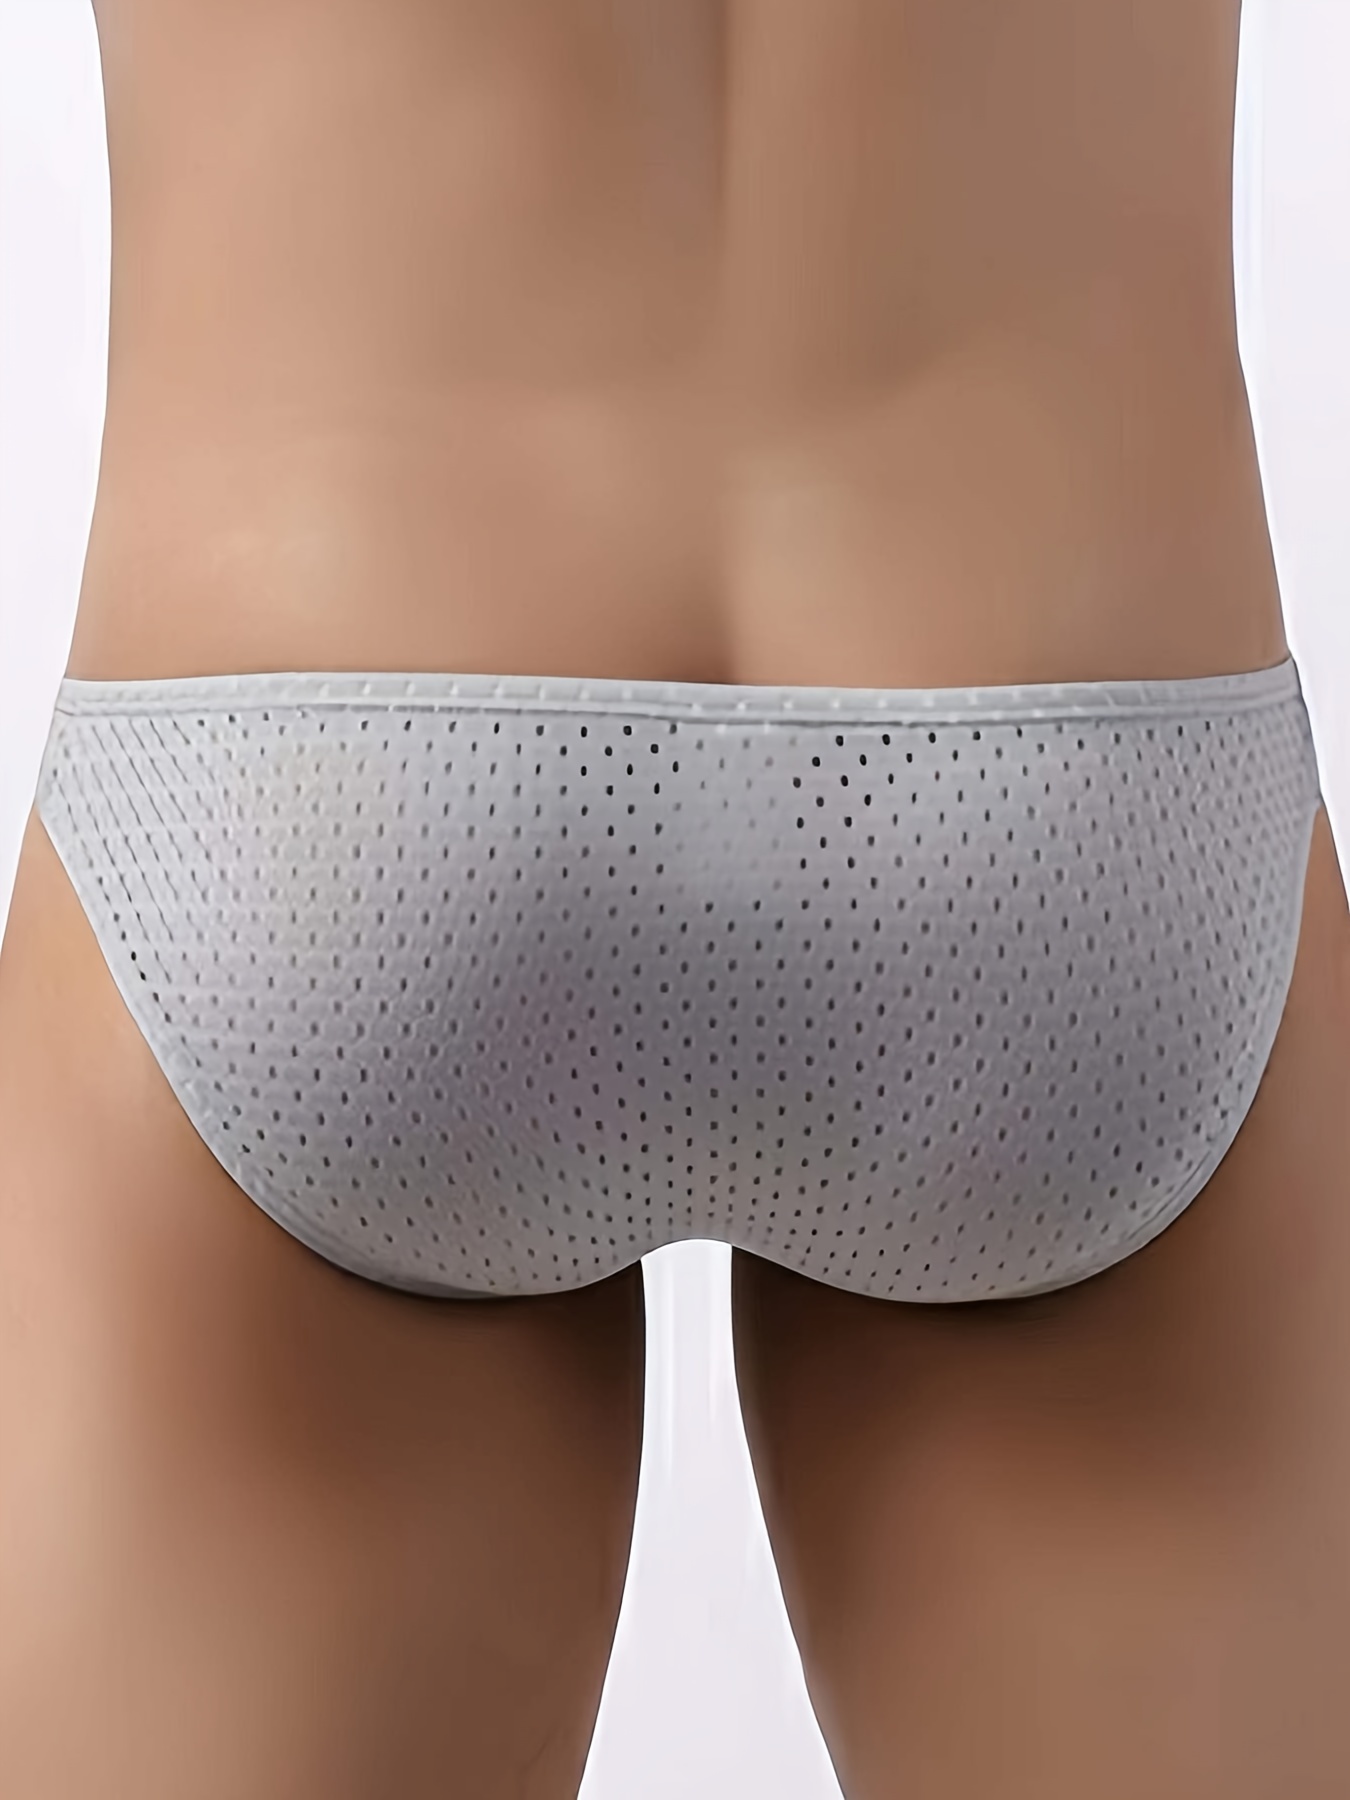 Seamless Underwear Men's One-Piece Briefs U Convex Sexy Thin